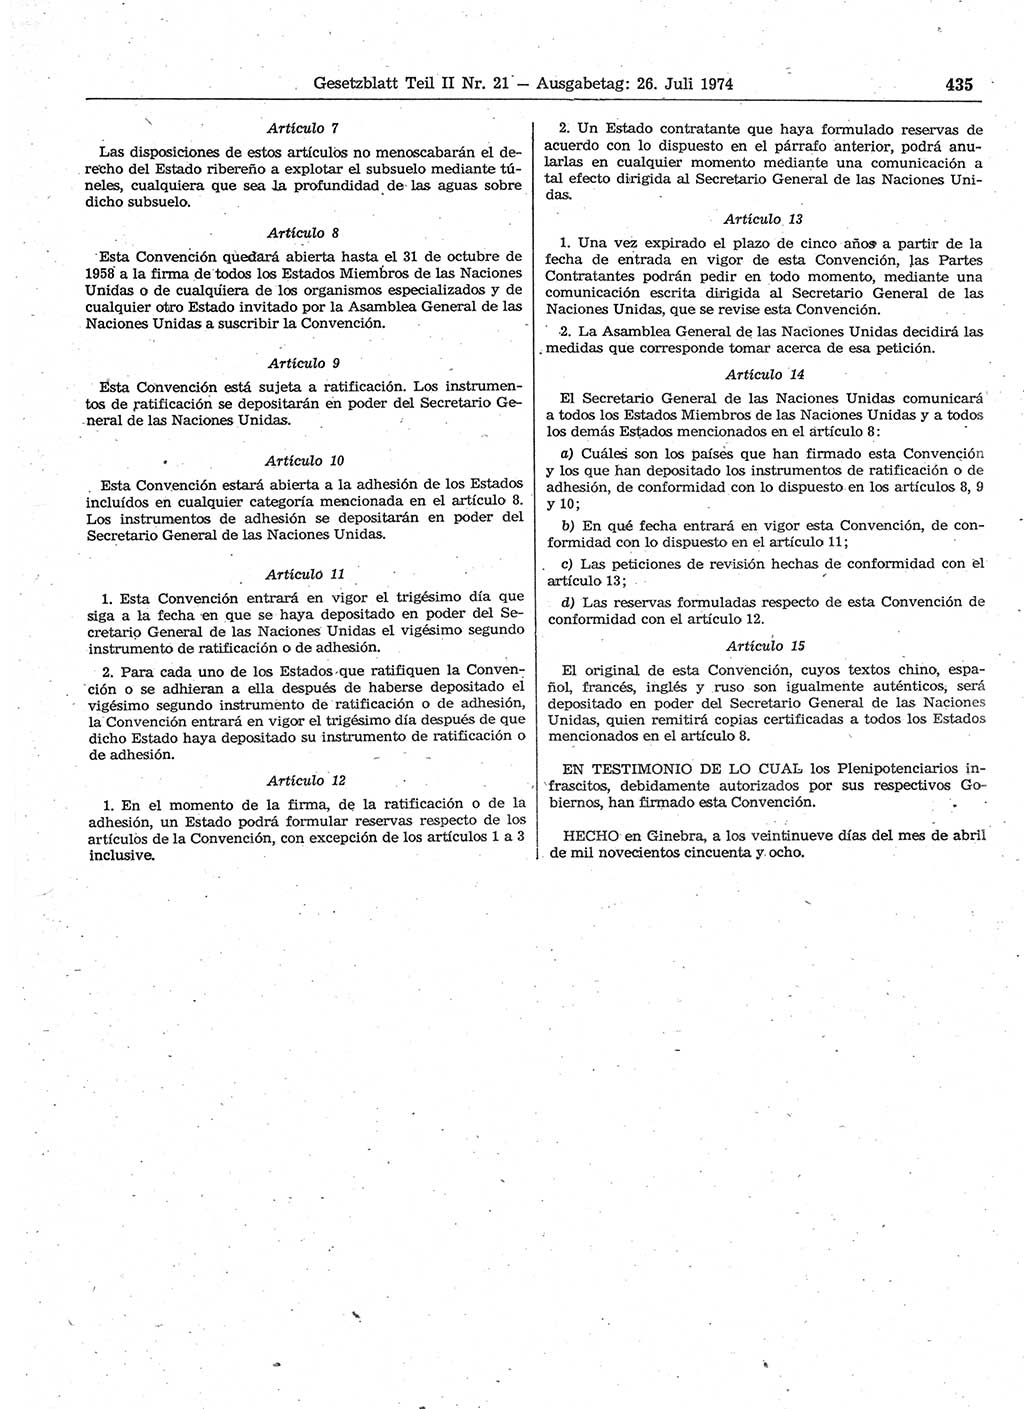 Gesetzblatt (GBl.) der Deutschen Demokratischen Republik (DDR) Teil ⅠⅠ 1974, Seite 435 (GBl. DDR ⅠⅠ 1974, S. 435)